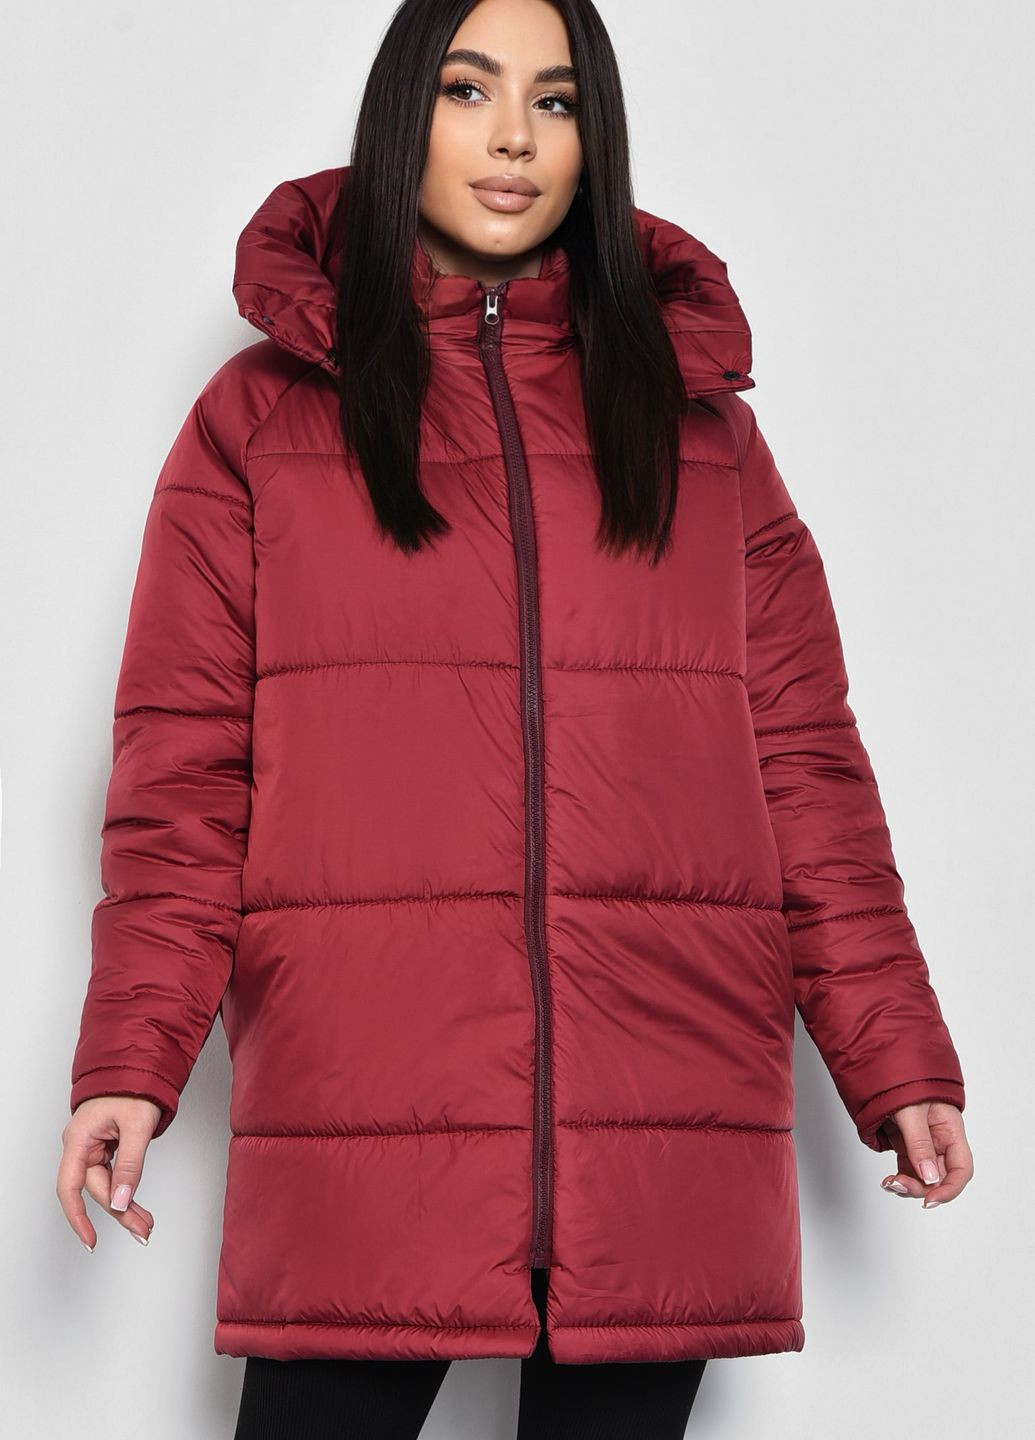 Коричневая зимняя куртка женская демисезонная бордового цвета Let's Shop